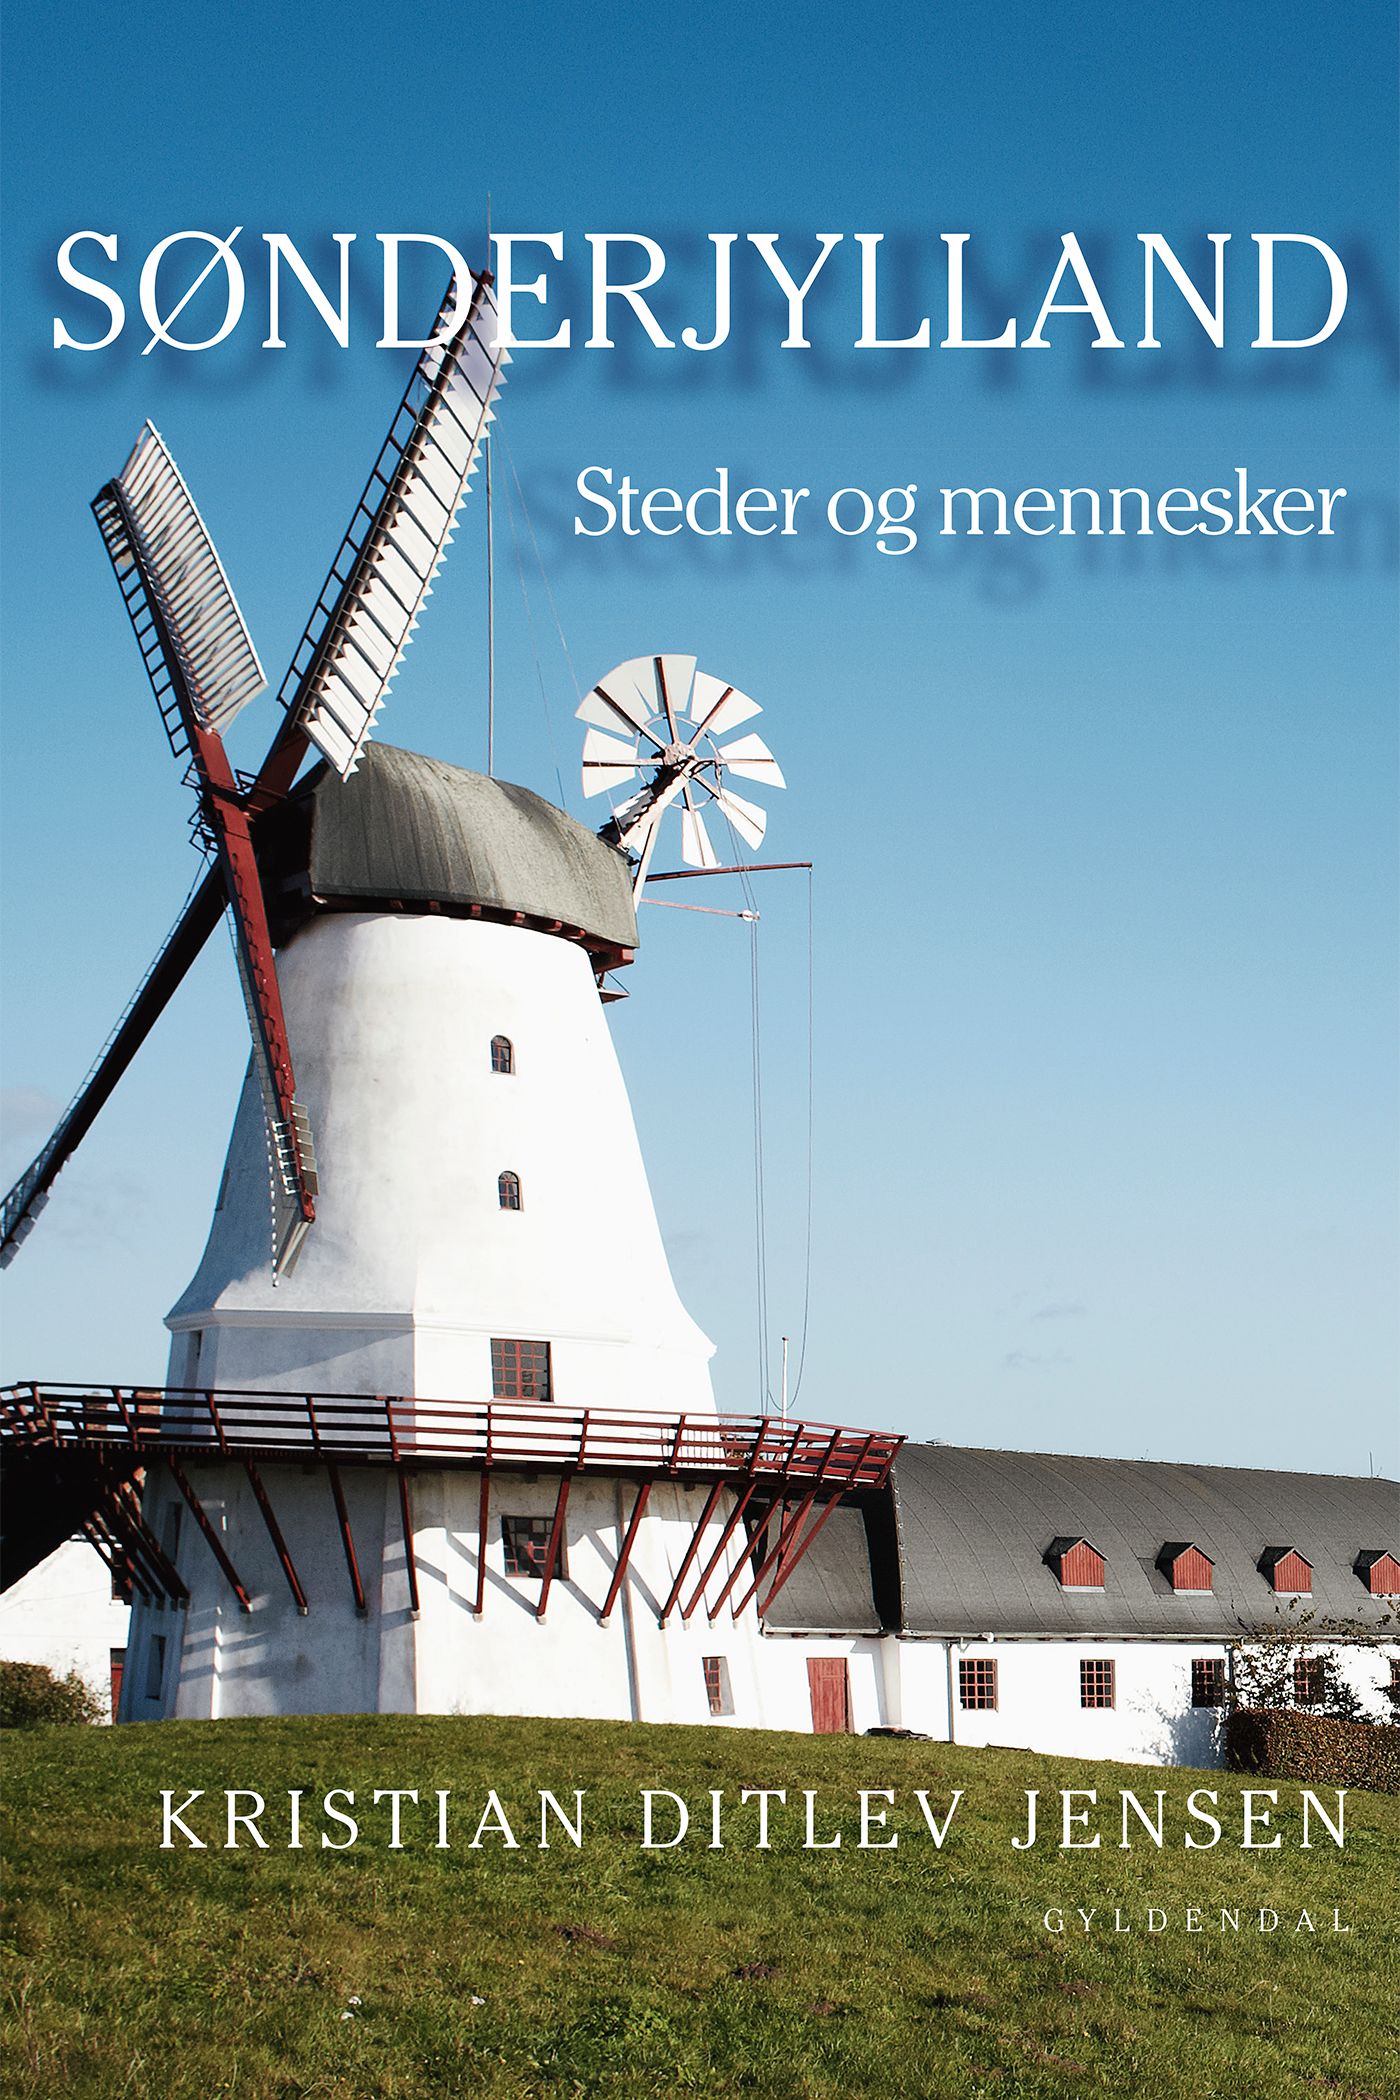 Sønderjylland, eBook by Kristian Ditlev Jensen